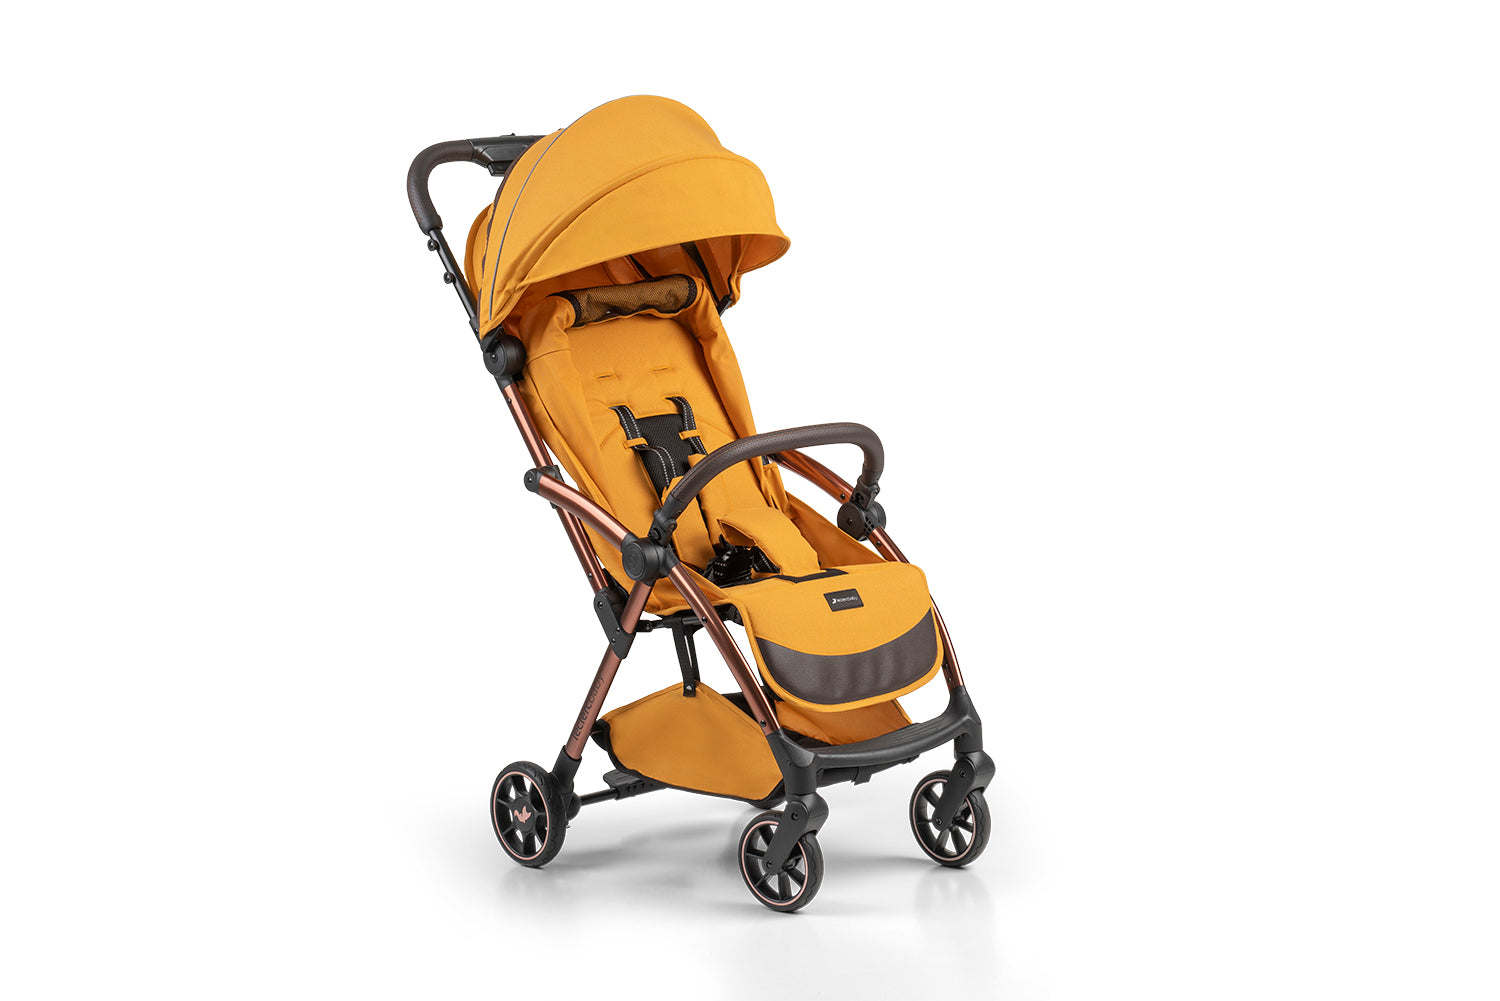 Influencer Air Twin Stroller Bundle : Golden Mustard Stroller + Violet Grey Stroller